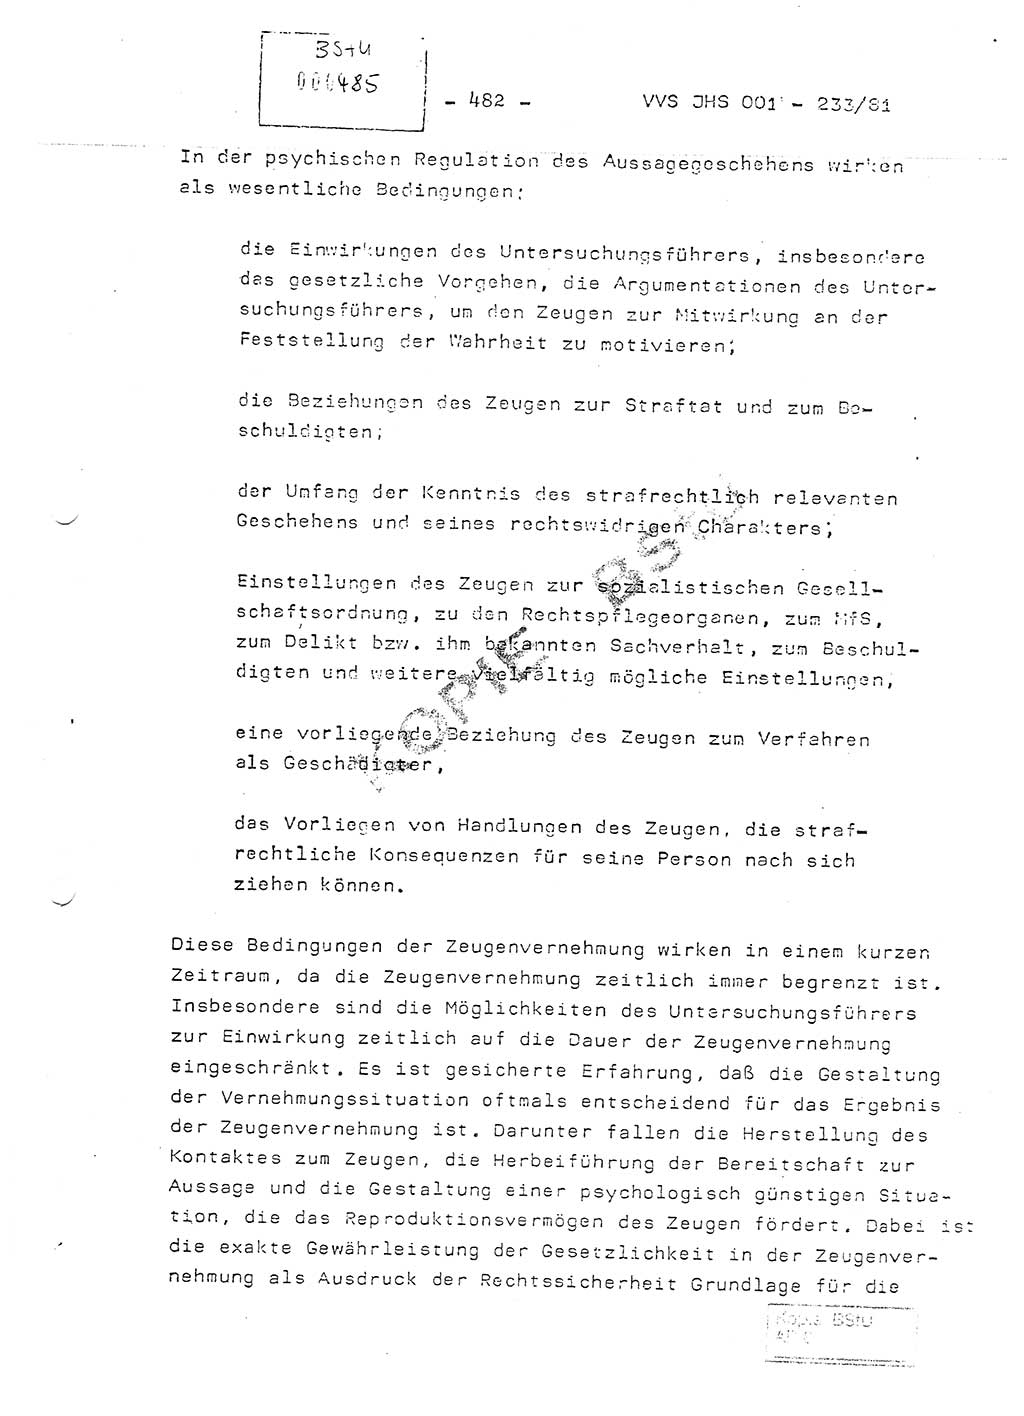 Dissertation Oberstleutnant Horst Zank (JHS), Oberstleutnant Dr. Karl-Heinz Knoblauch (JHS), Oberstleutnant Gustav-Adolf Kowalewski (HA Ⅸ), Oberstleutnant Wolfgang Plötner (HA Ⅸ), Ministerium für Staatssicherheit (MfS) [Deutsche Demokratische Republik (DDR)], Juristische Hochschule (JHS), Vertrauliche Verschlußsache (VVS) o001-233/81, Potsdam 1981, Blatt 482 (Diss. MfS DDR JHS VVS o001-233/81 1981, Bl. 482)